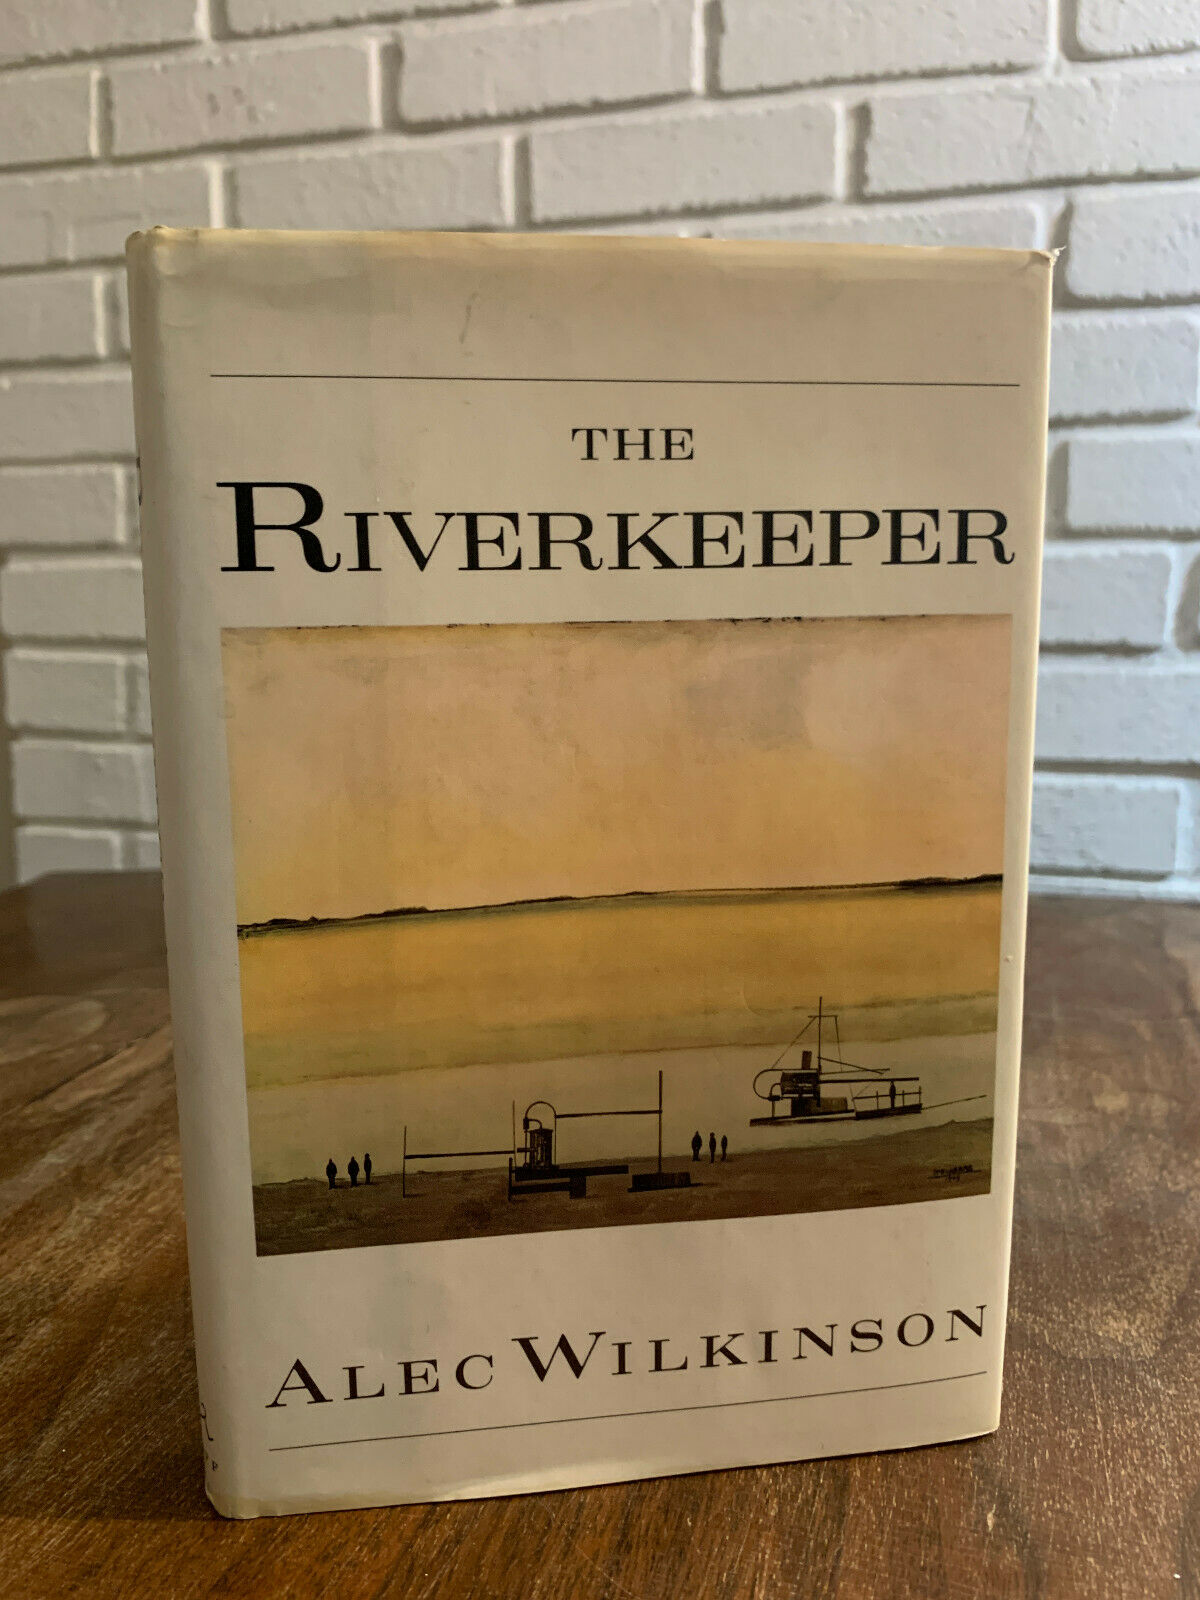 The Riverkeeper, ALEC WILKINSON, 1990, W4